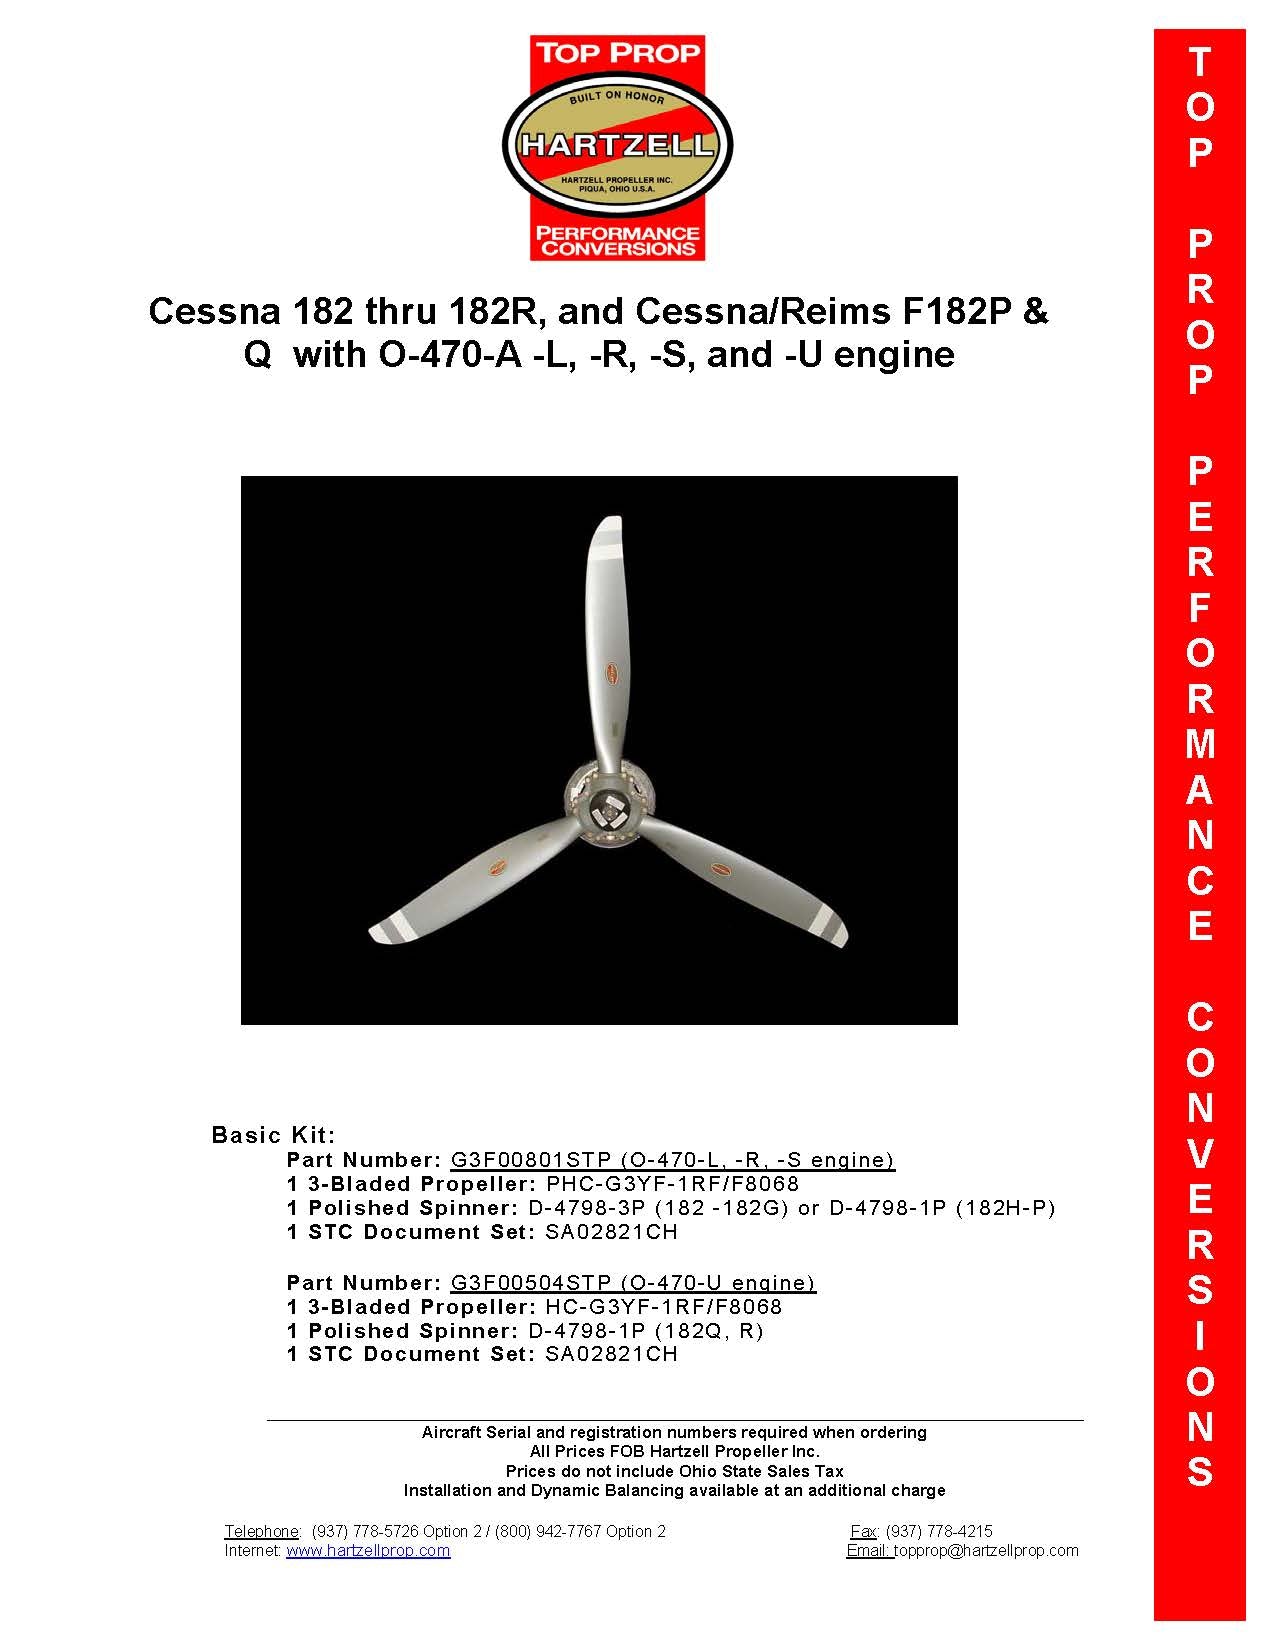 CESSNA-182-G3F00504STP-PAGE-1